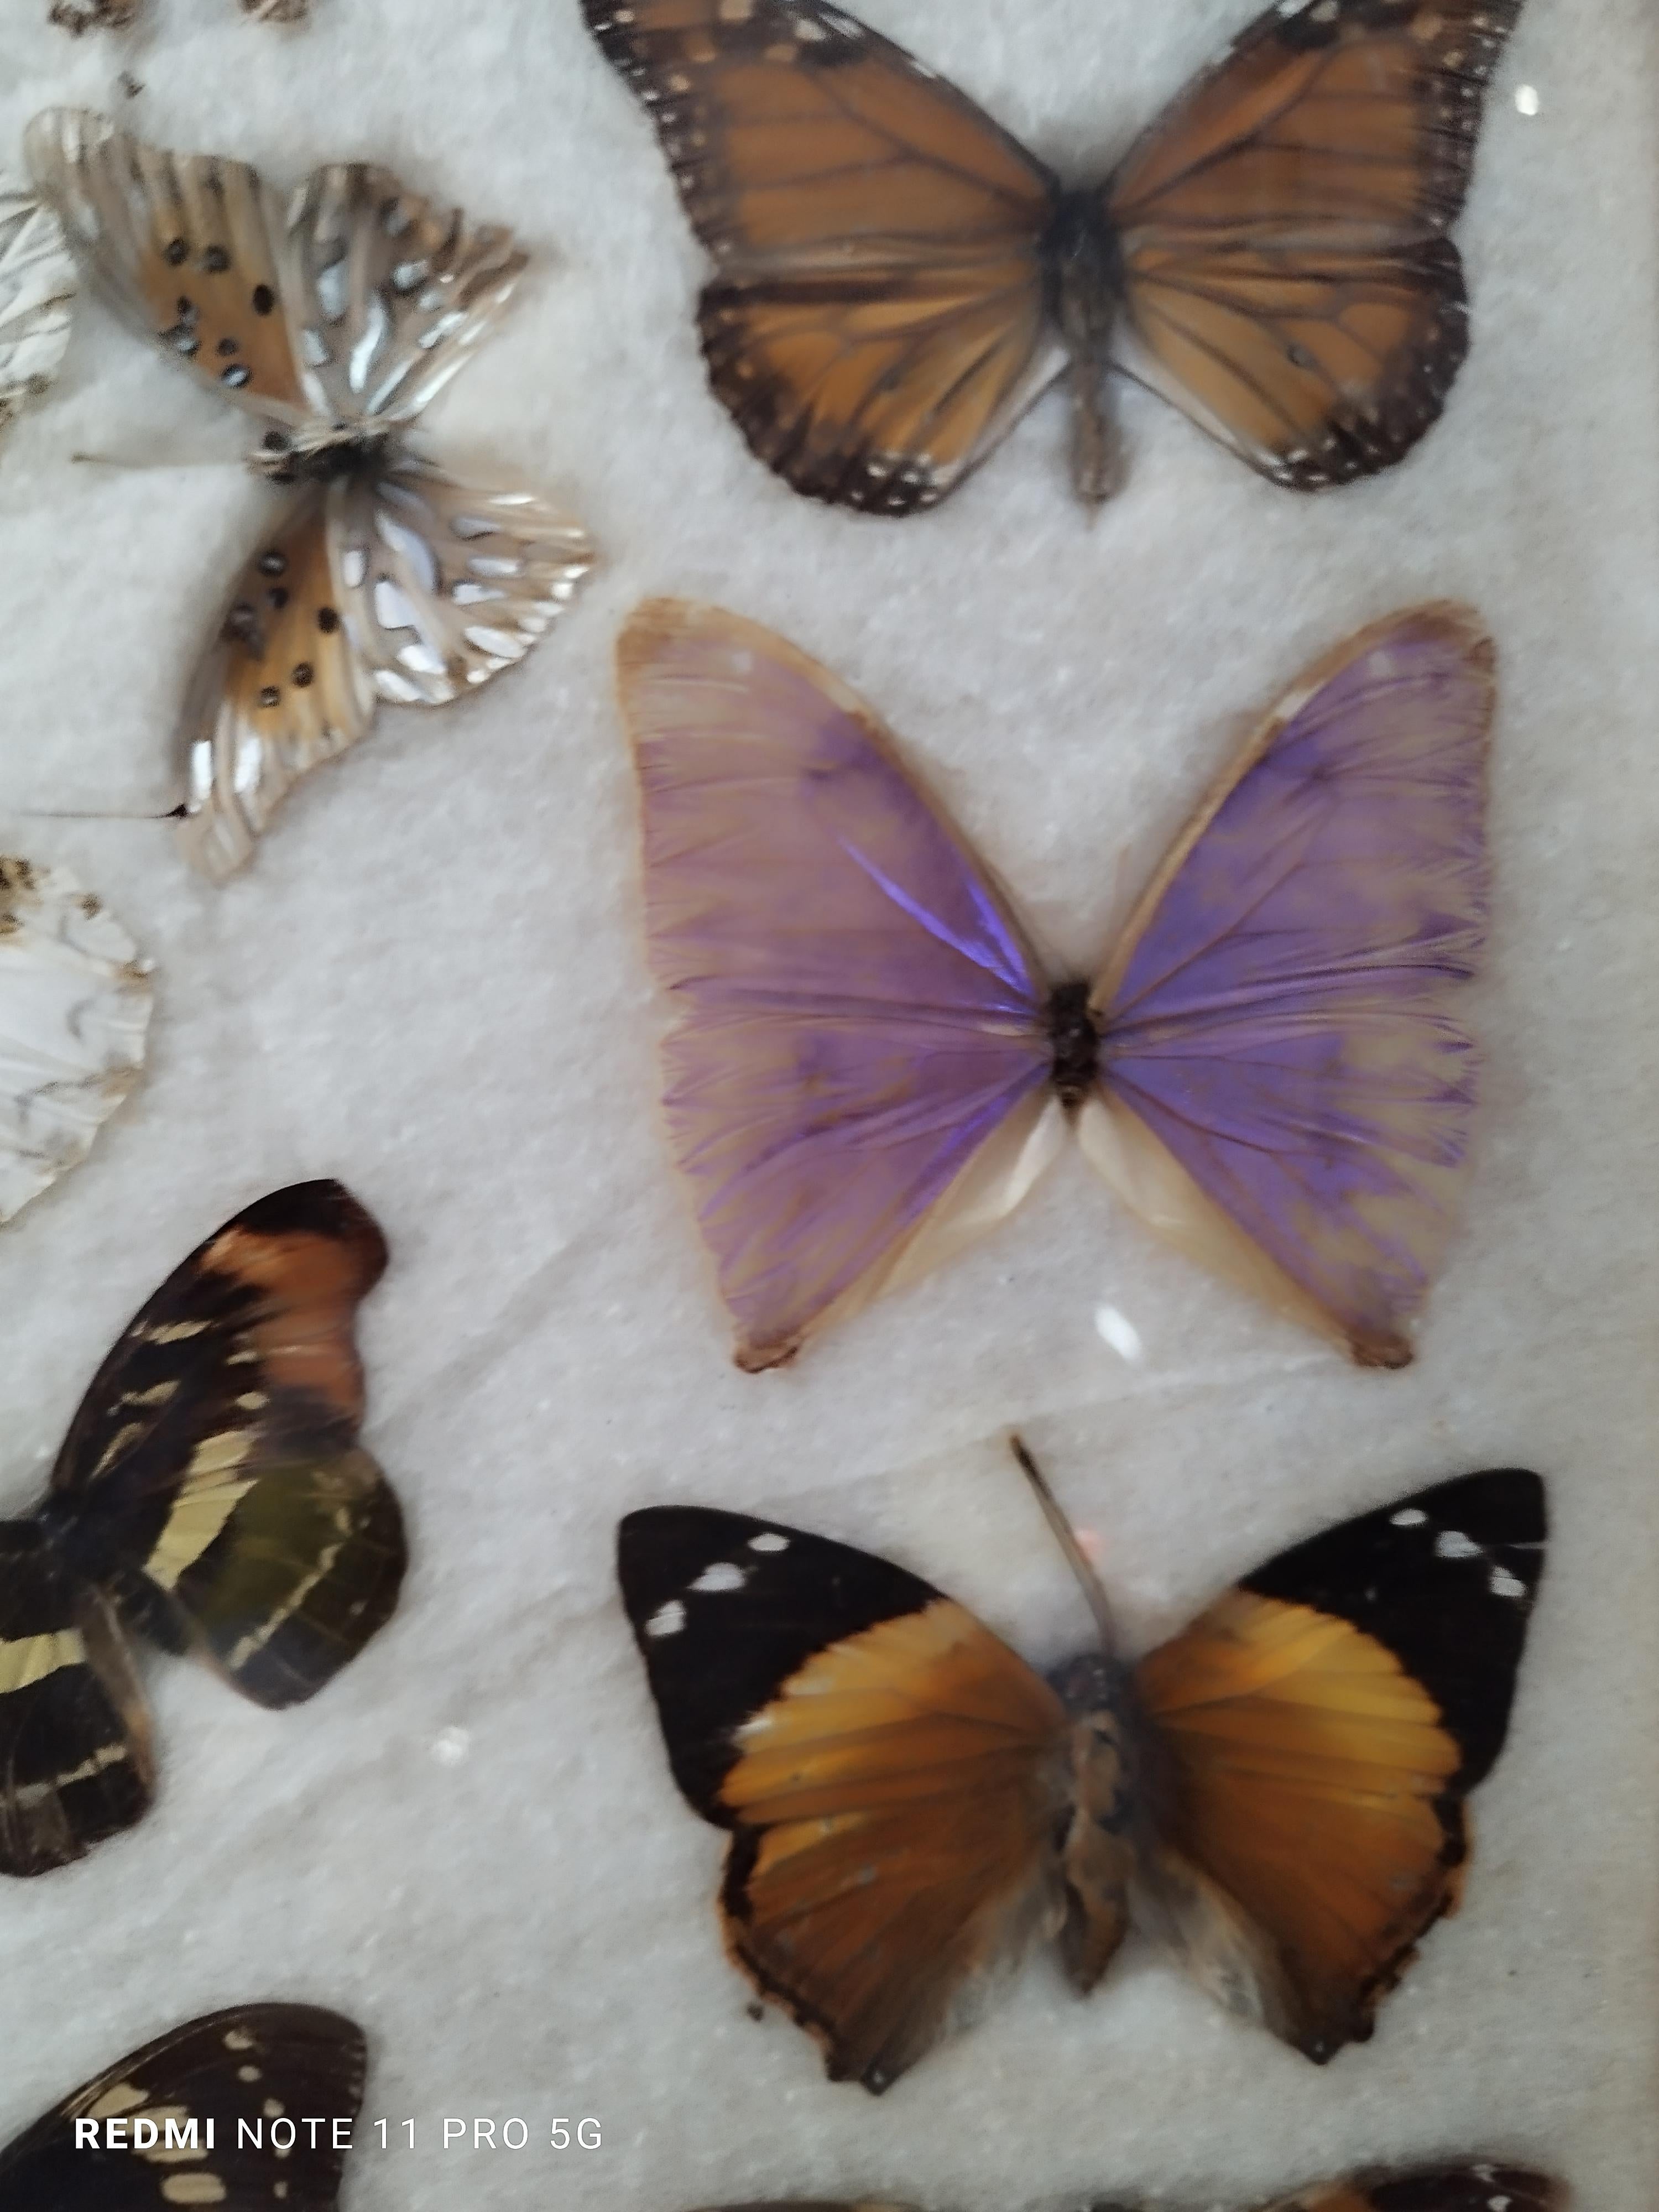 Eine Gruppe echter brasilianischer Schmetterlinge, präsentiert in einer schönen antiken Holzkiste aus dem Jahr 1960. Diese Exemplare sind extrem selten und wurden aus einer Vintage-Sammlung ausgewählt.